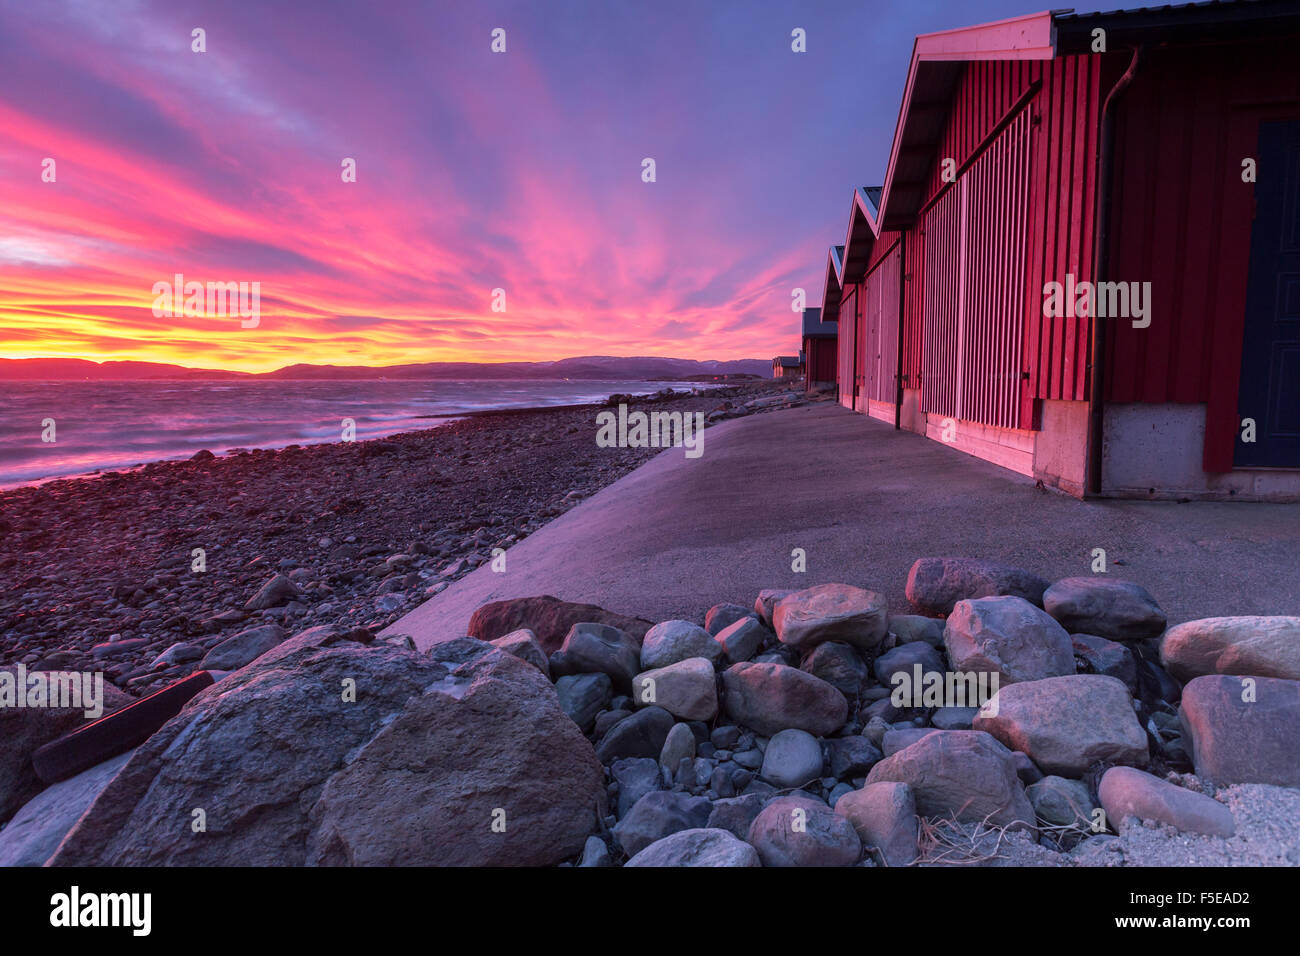 Los colores del amanecer ilumina las casas de pescadores, Arland Brekstad, Trondelag, Noruega, Escandinavia, Europa Foto de stock